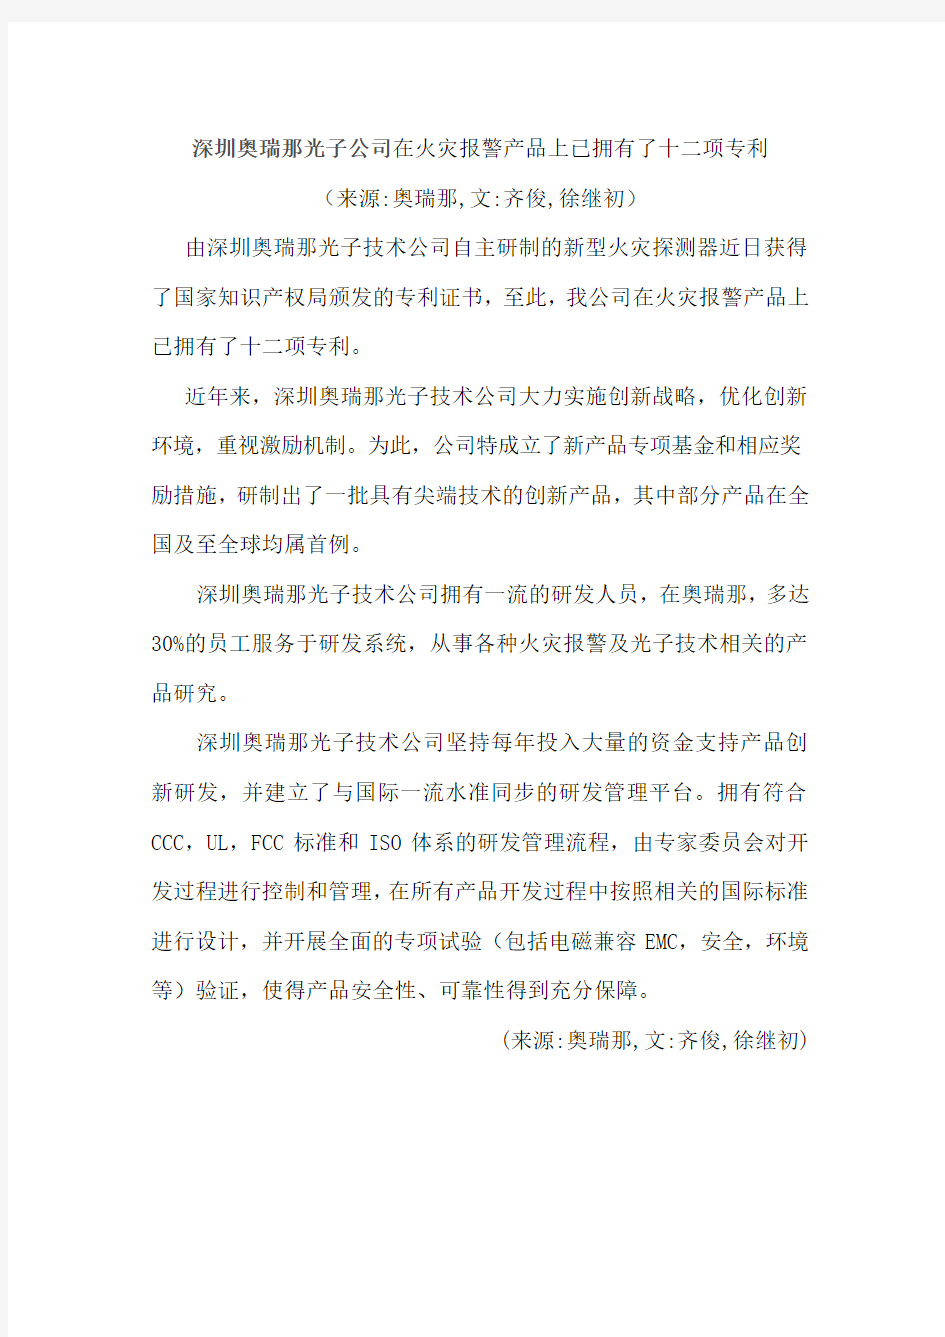 深圳奥瑞那光子公司在火灾报警产品上已拥有了十二项专利